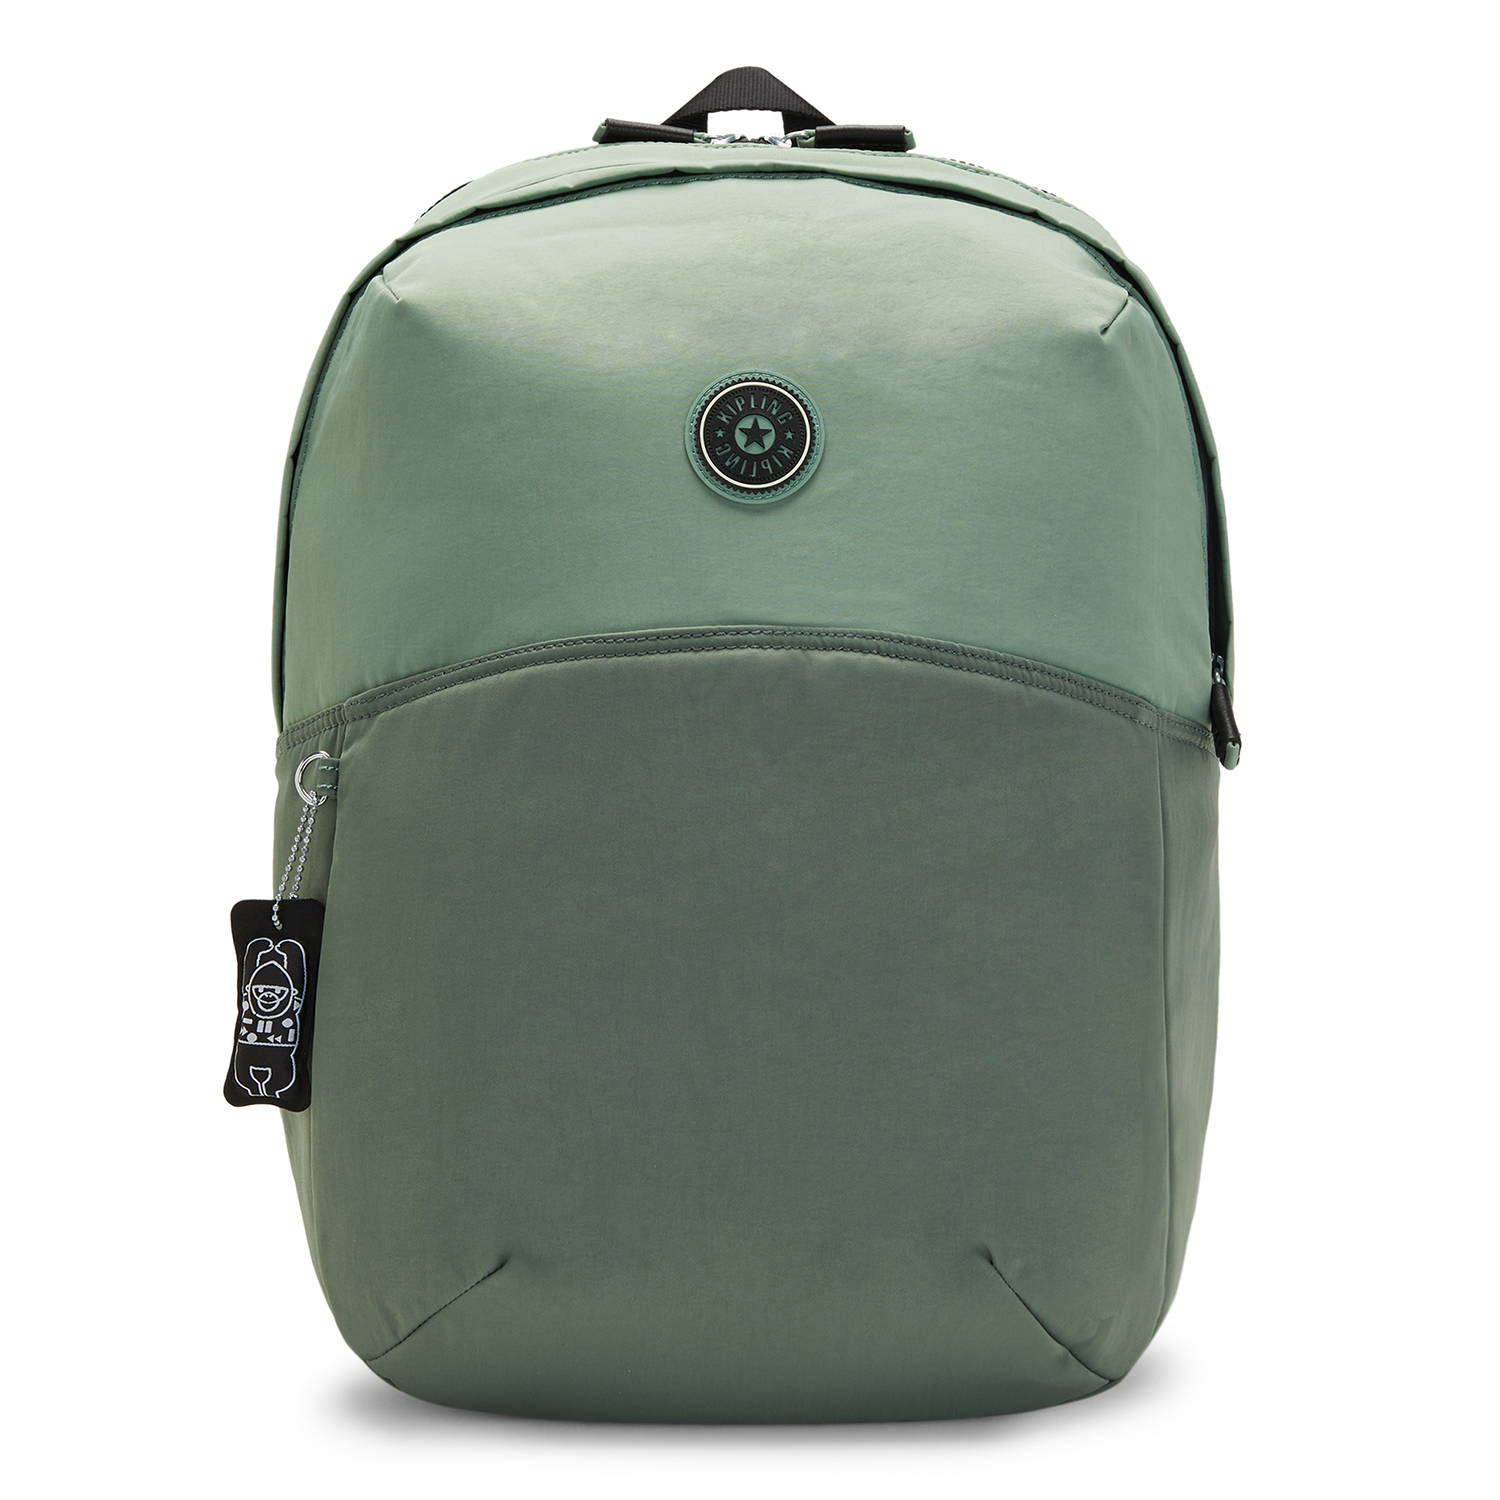 Torby & plecaki Akcesoria KIPLING Plecak Ayano w kolorze Zielonym 